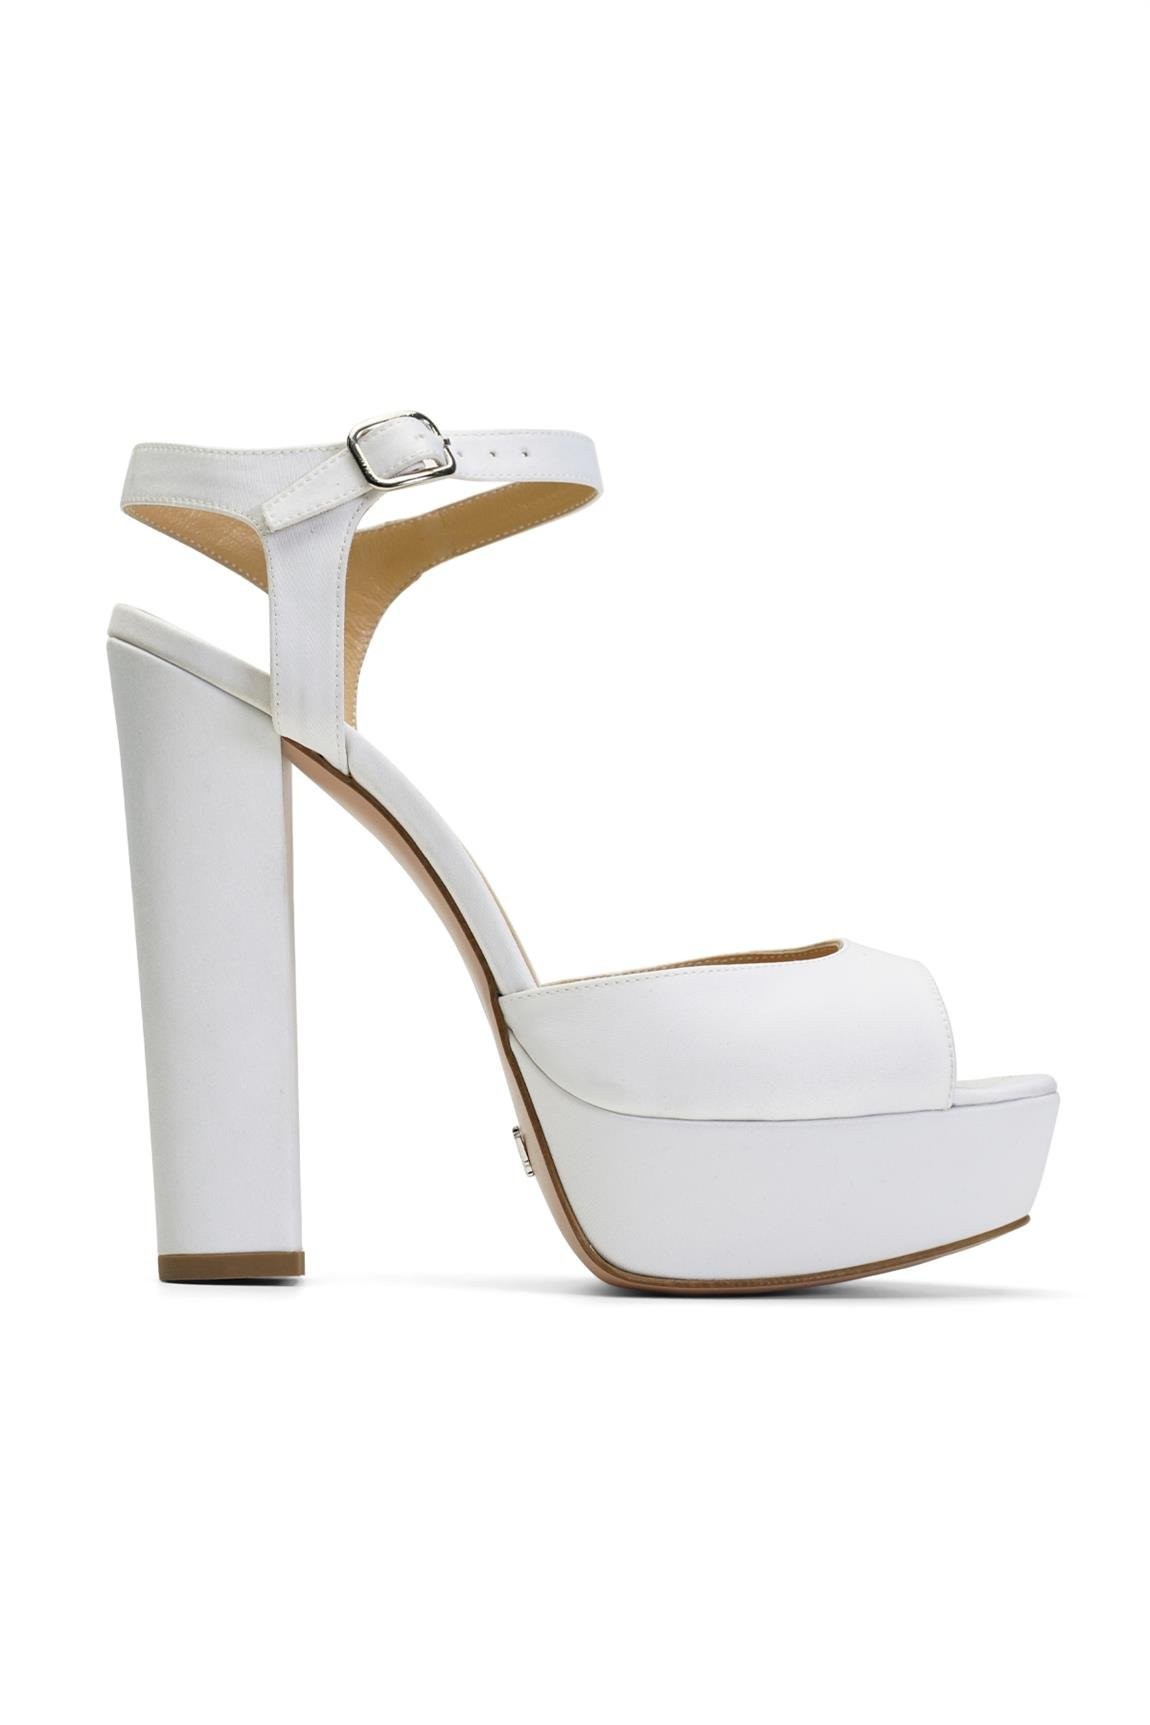 Jabotter Nifty White Satin Platform Heeled Bridal Shoes